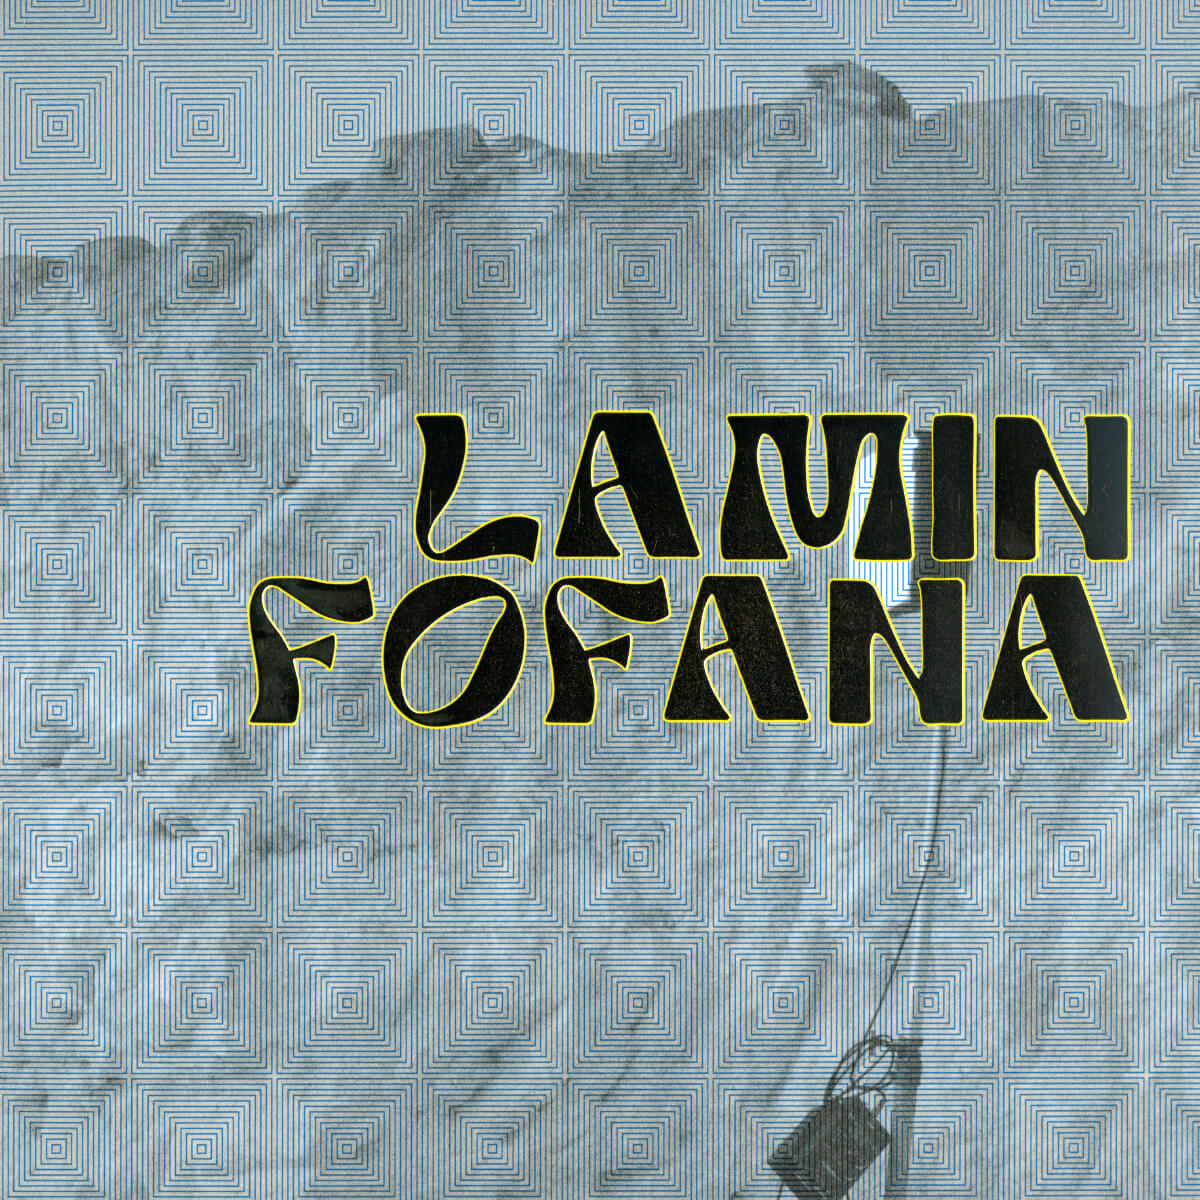 Lamin Fofana – Lamin Fofana And The Doudou Ndiaye Rose Family